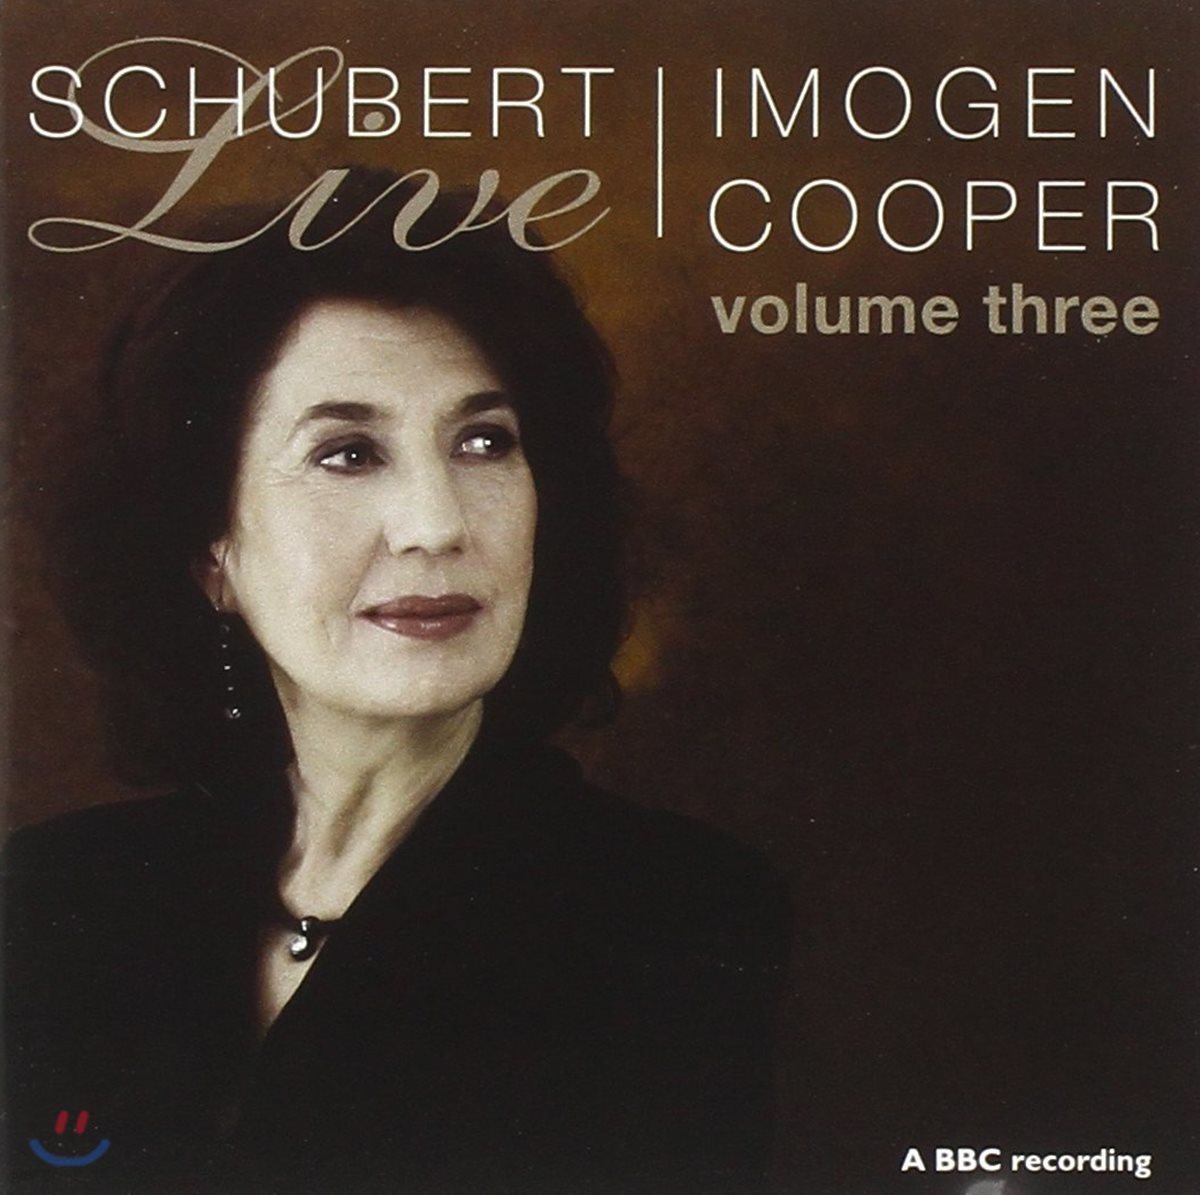 Imogen Cooper 슈베르트: 피아노 작품 3집 - 소나타 D.784 960 840, 즉흥곡 (Schubert: Piano Music) 이모젠 쿠퍼